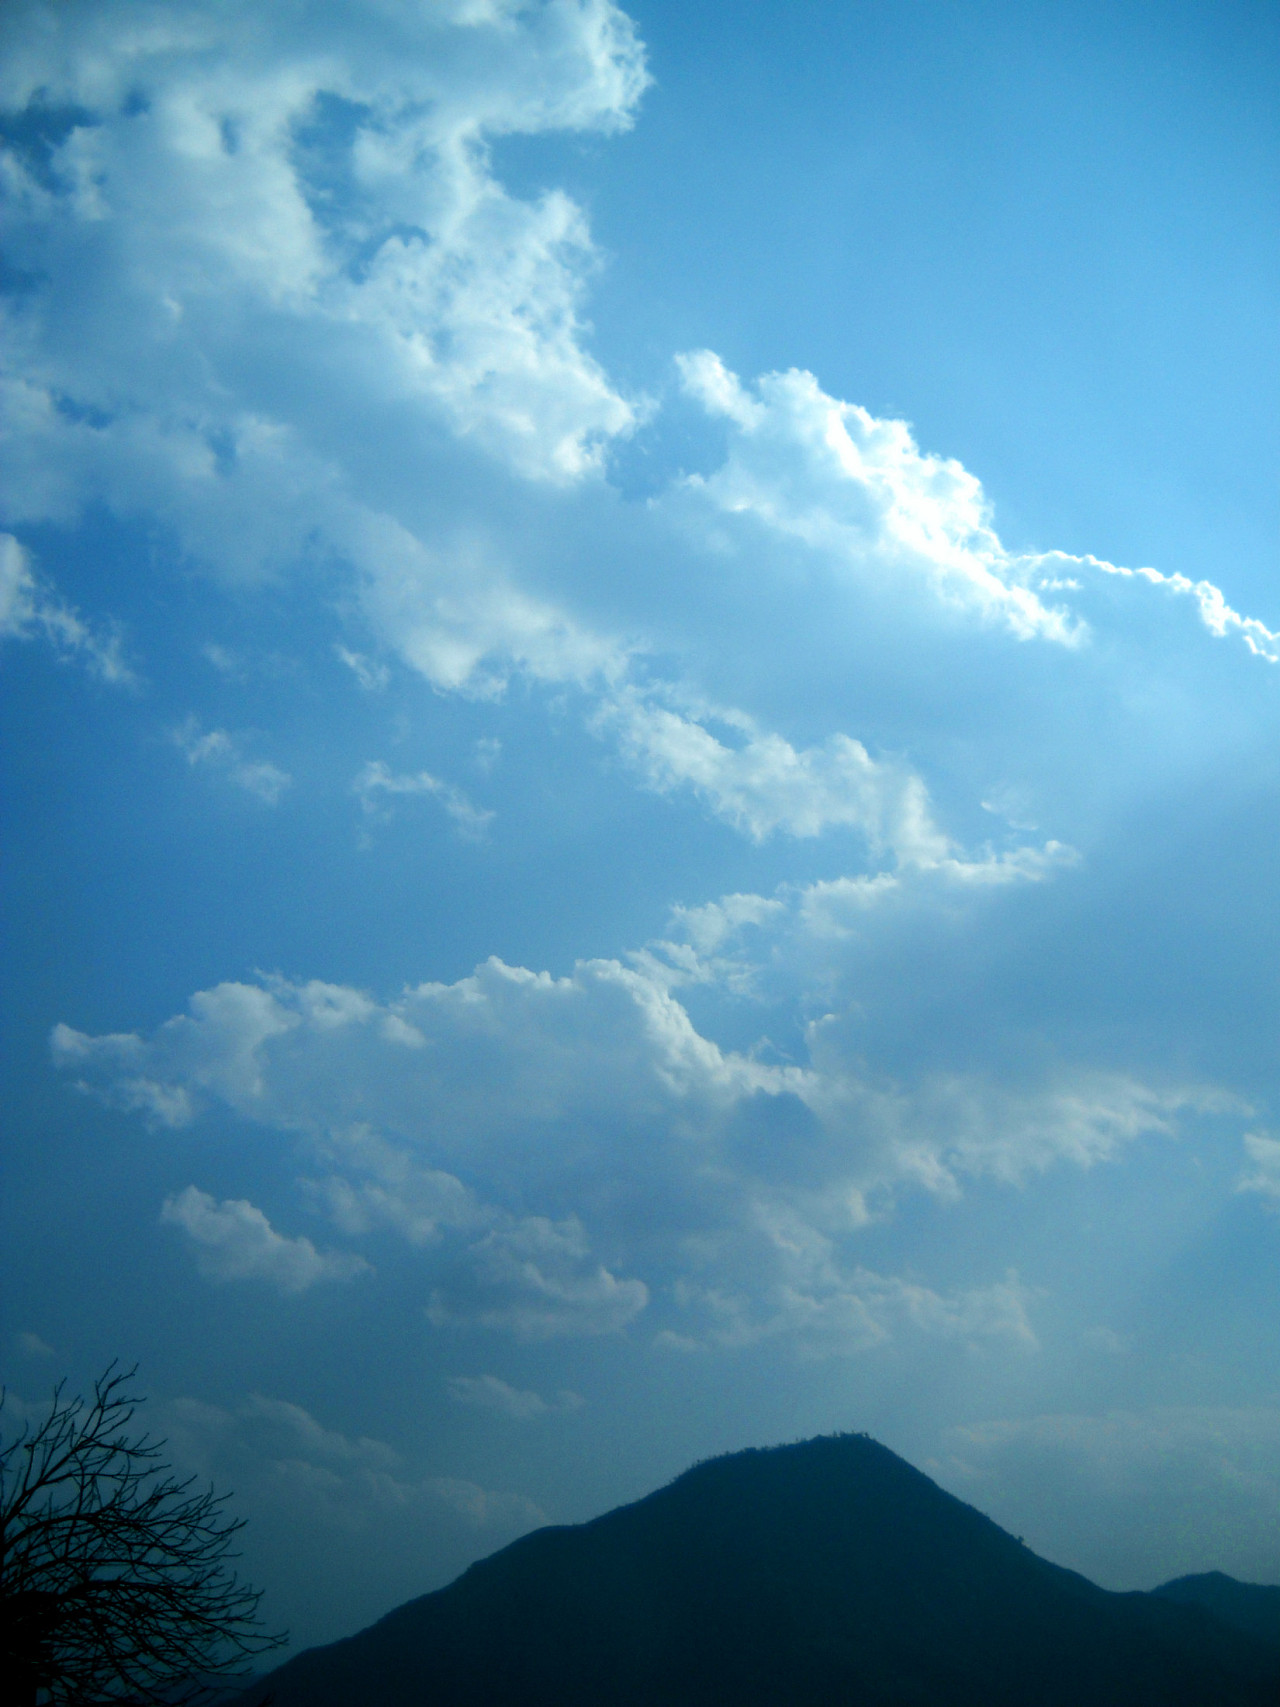 高清云素材PSD分层通道云素材天空云彩漂亮天空高清图片夕阳美景共千种1000+云素材_视频说明书